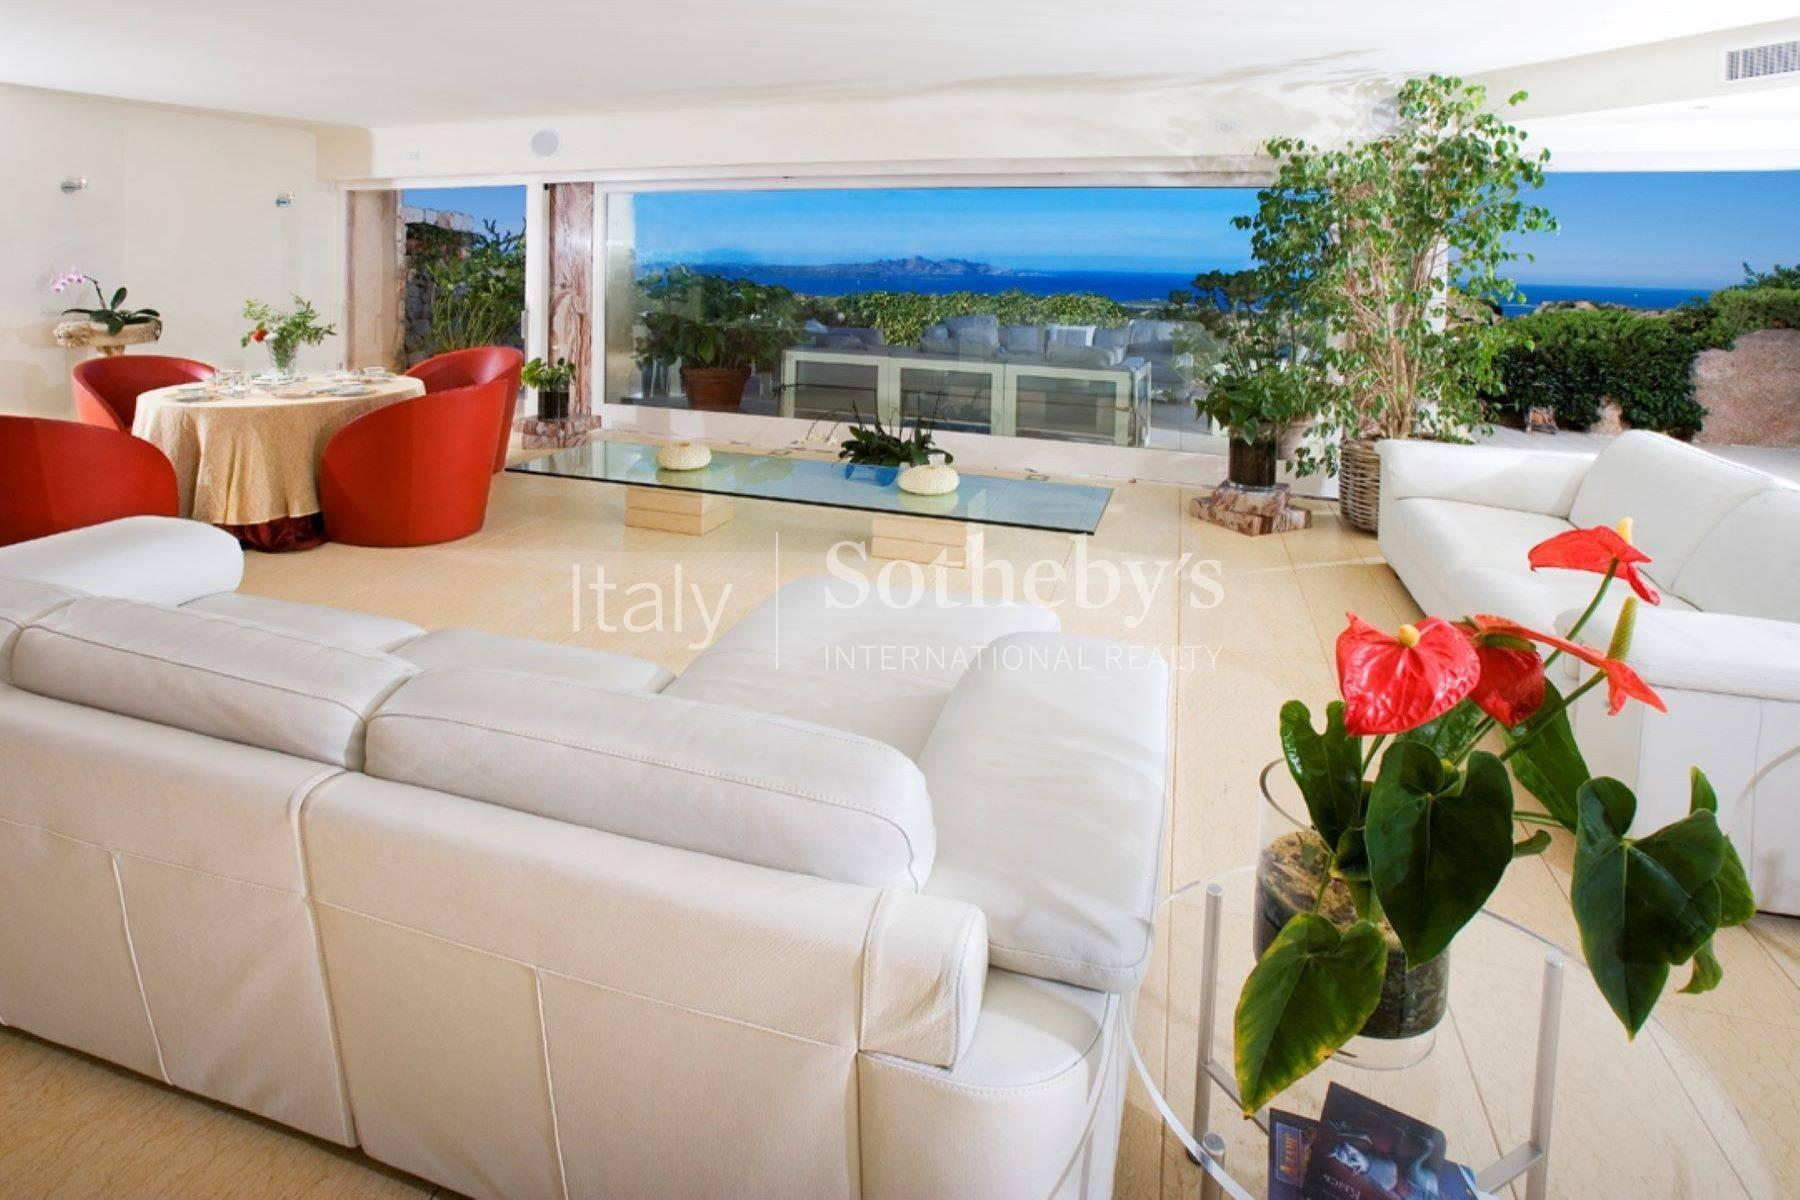 Exclusive property overlooking the Costa Smeralda - 7